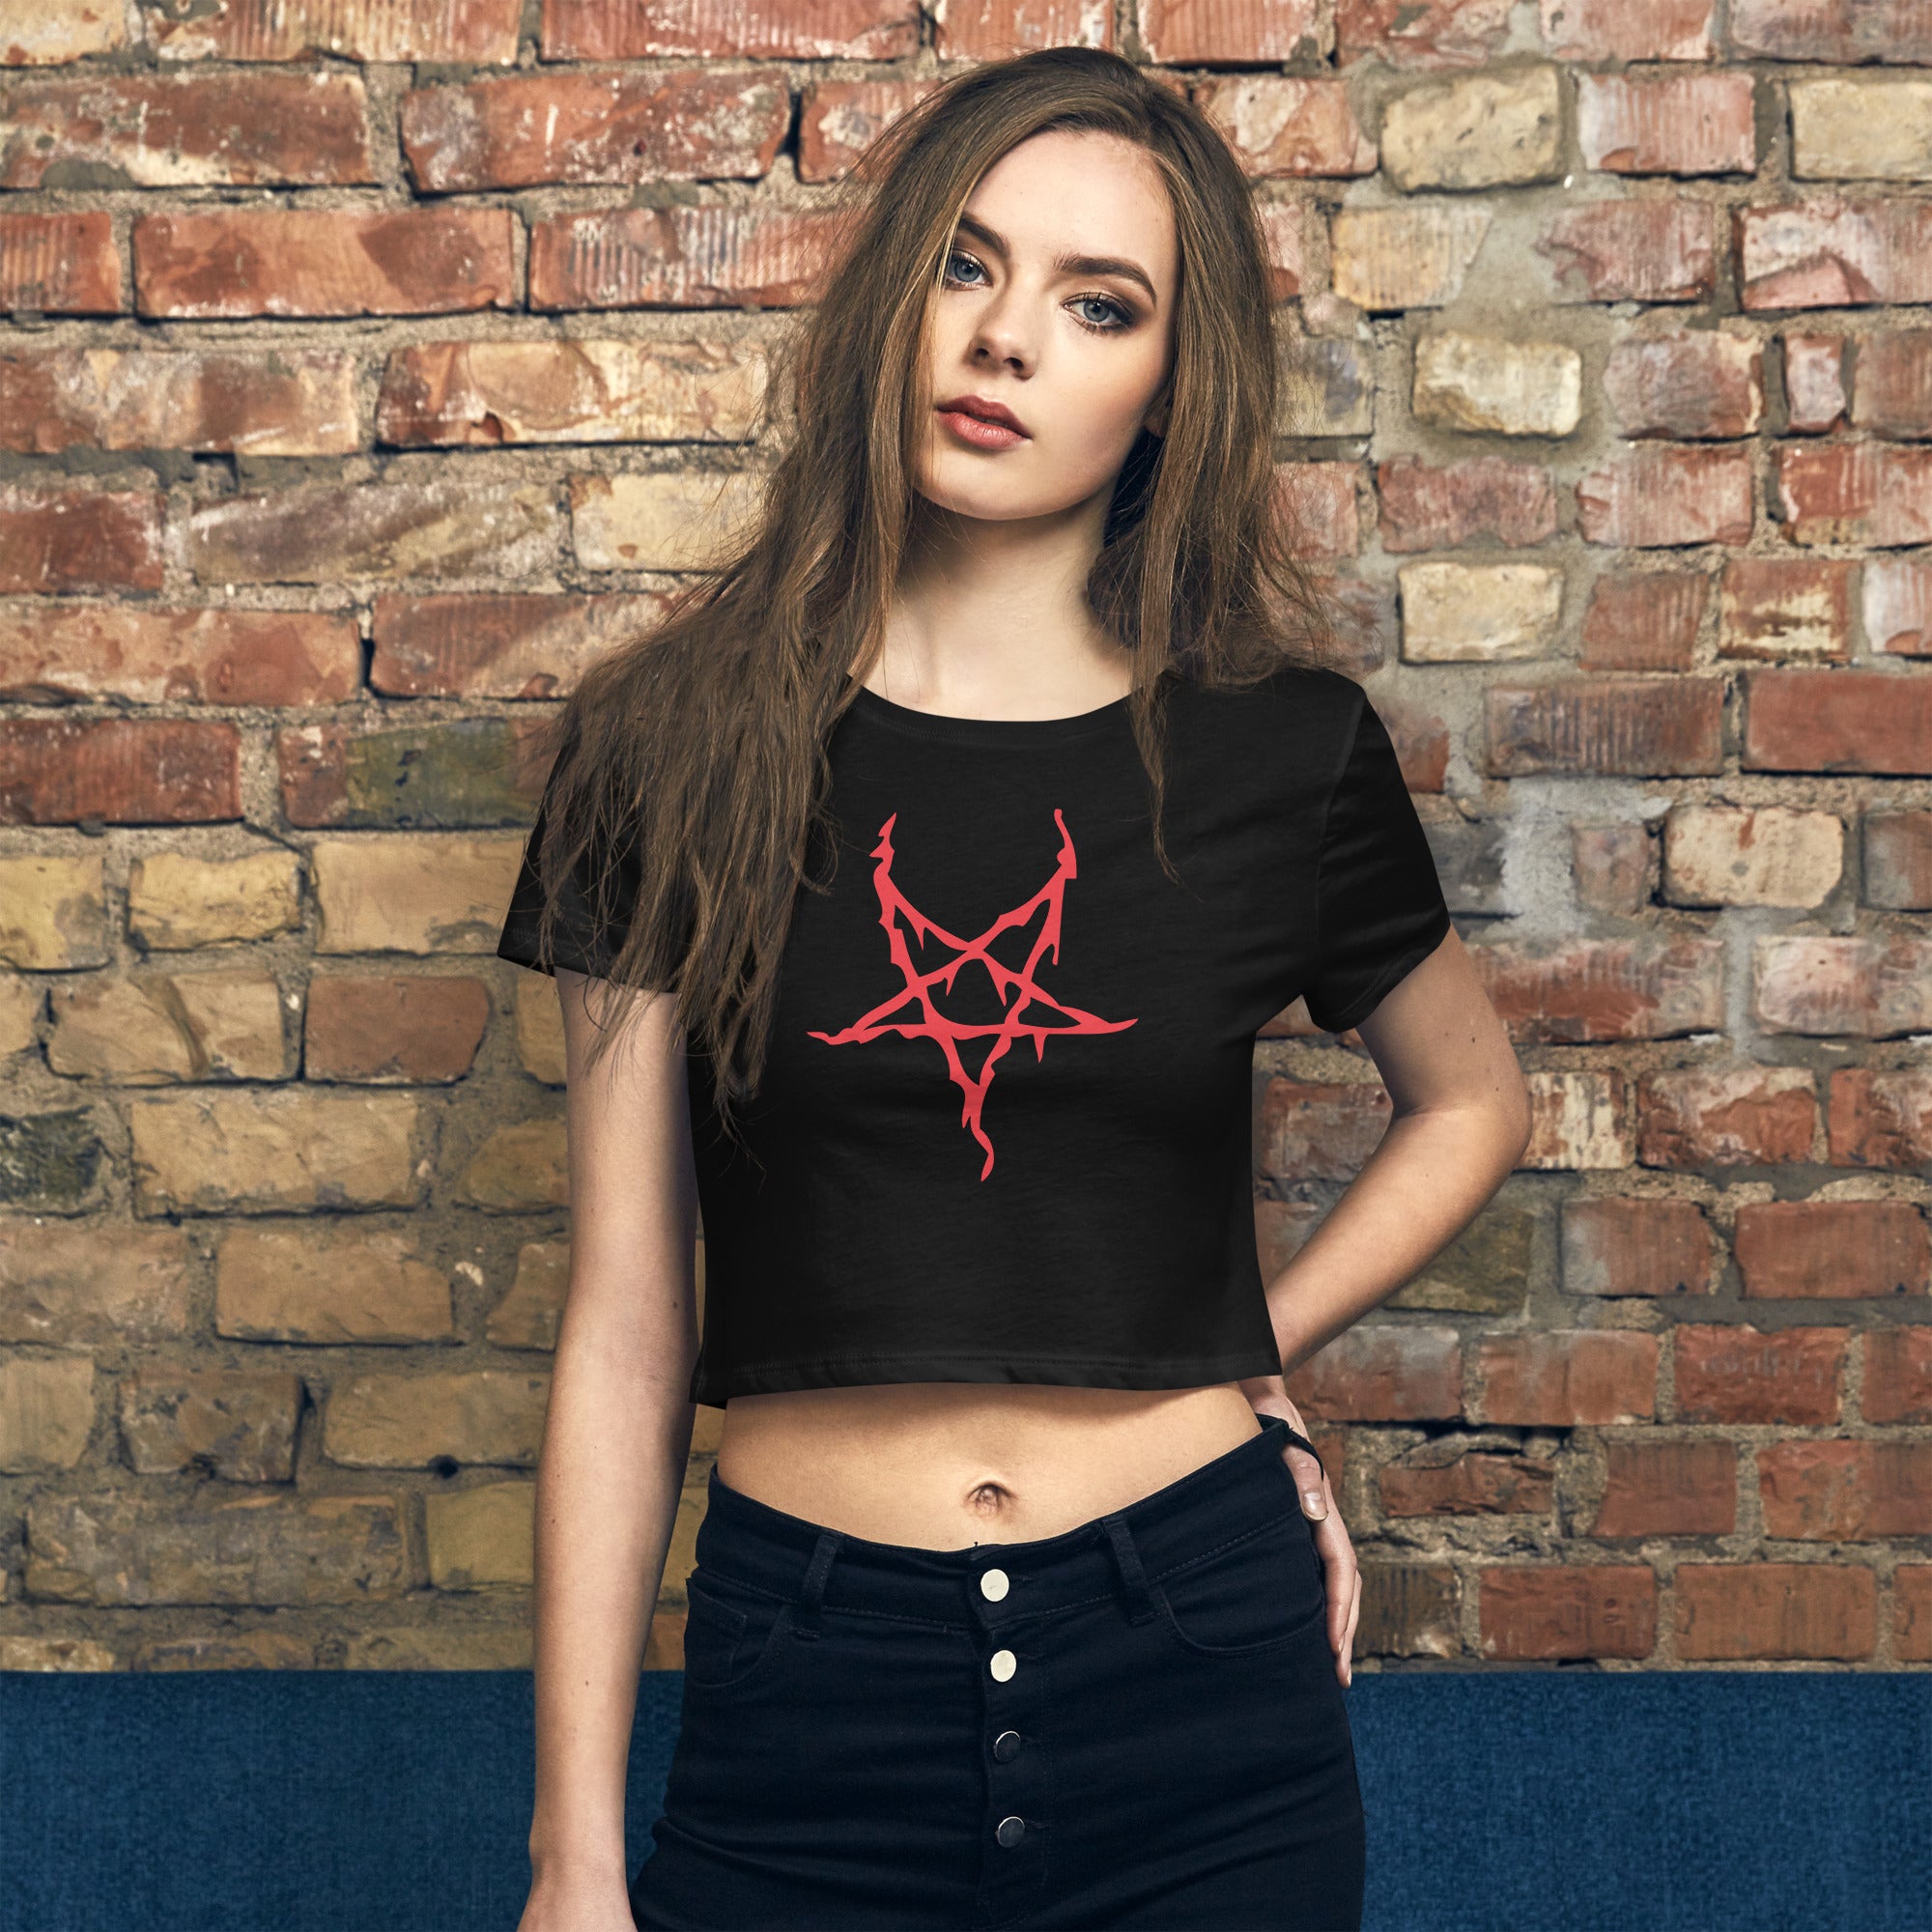 Red Melting Inverted Pentagram Black Metal Style Women’s Crop Tee